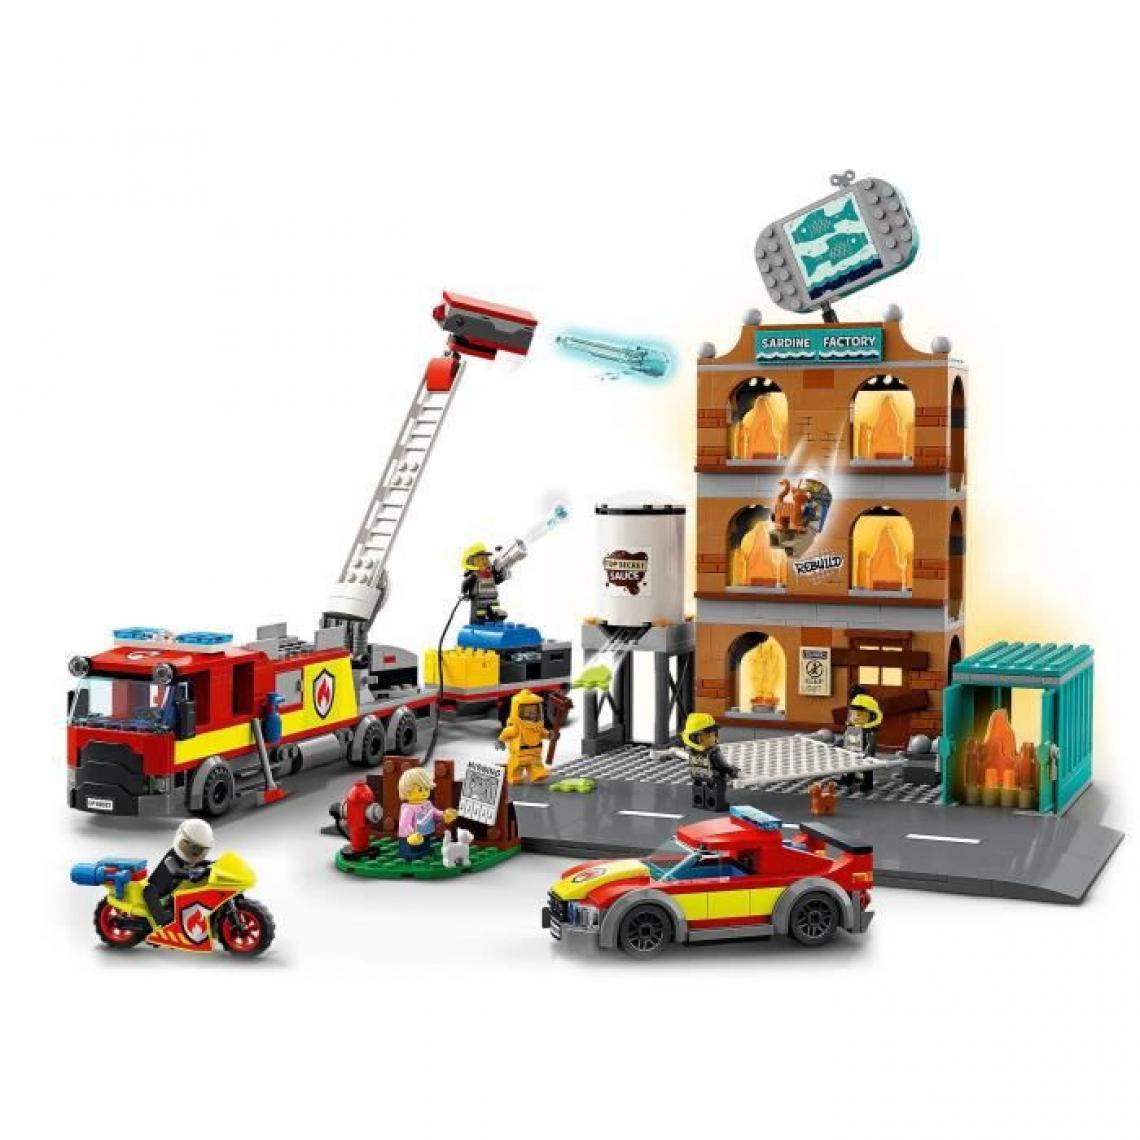 Lego - LEGO 60321 City Fire La Brigade Pompiers Set de Construction avec Flammes, Minifigures, Jouet Camion pour Enfants des 7 ans - Briques et blocs